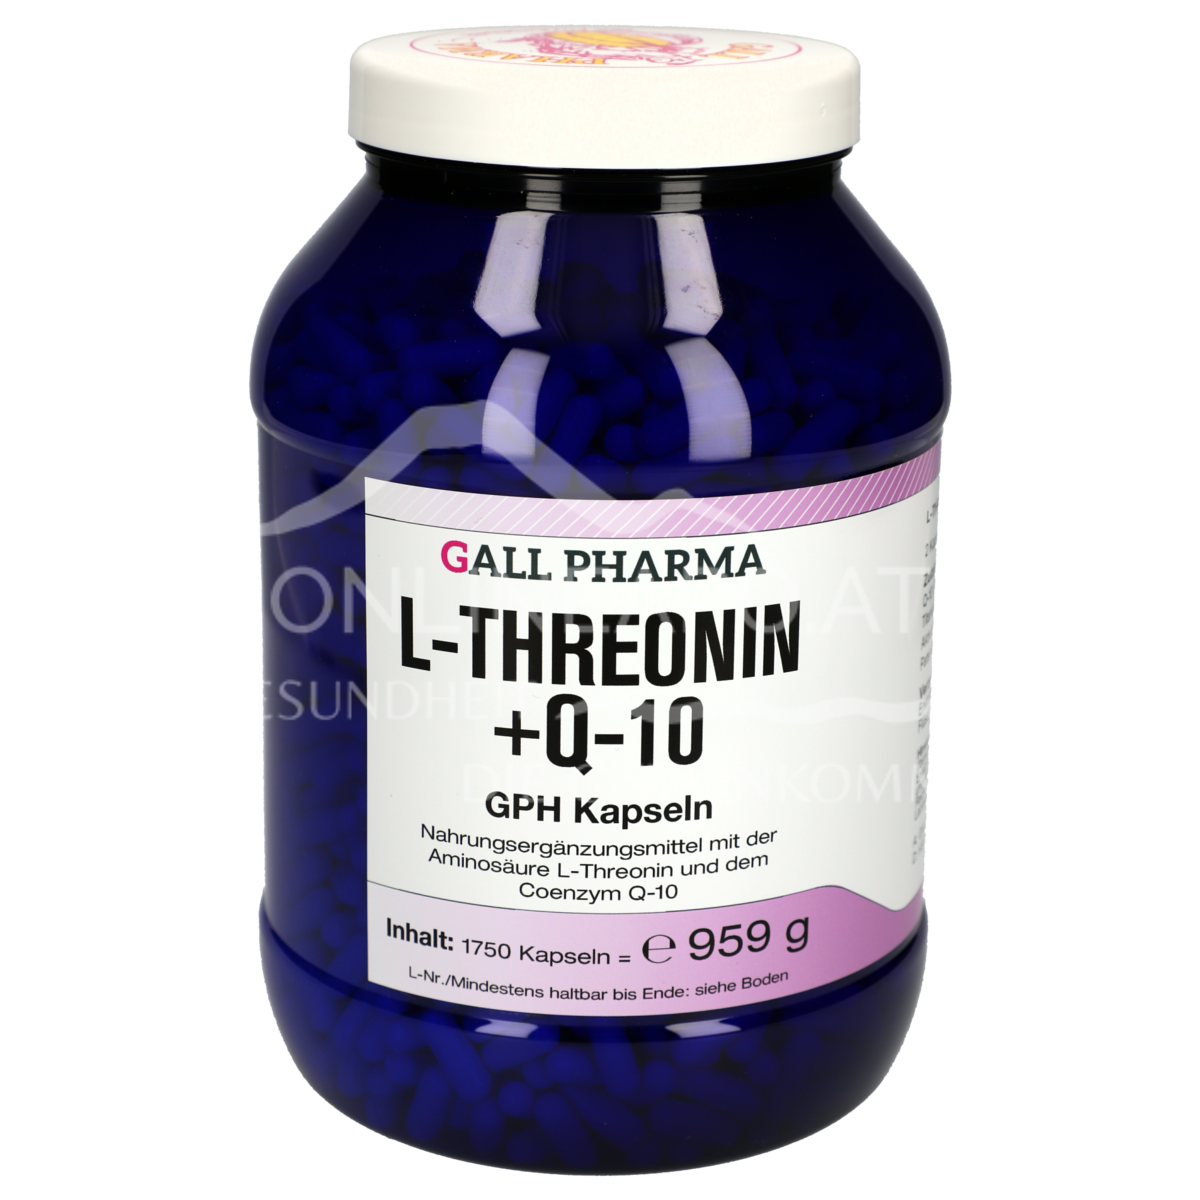 Gall Pharma L-Threonin + Q10 Kapseln